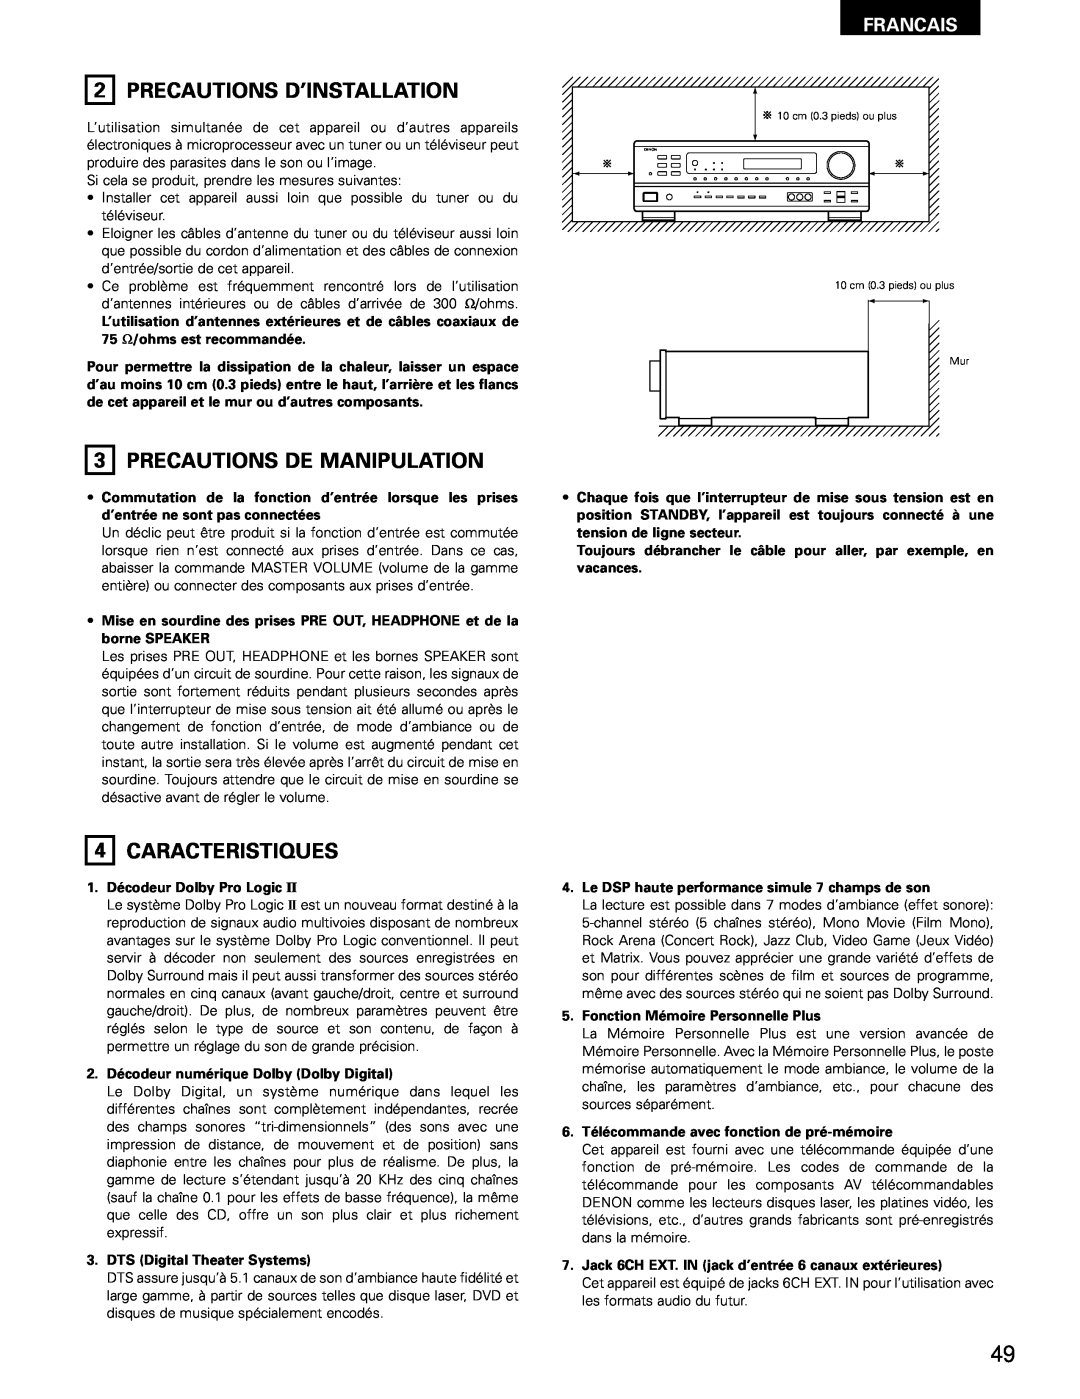 Denon AVR-682, AVR-1602 manual Precautions D’Installation, 3PRECAUTIONS DE MANIPULATION, 4CARACTERISTIQUES, Francais 